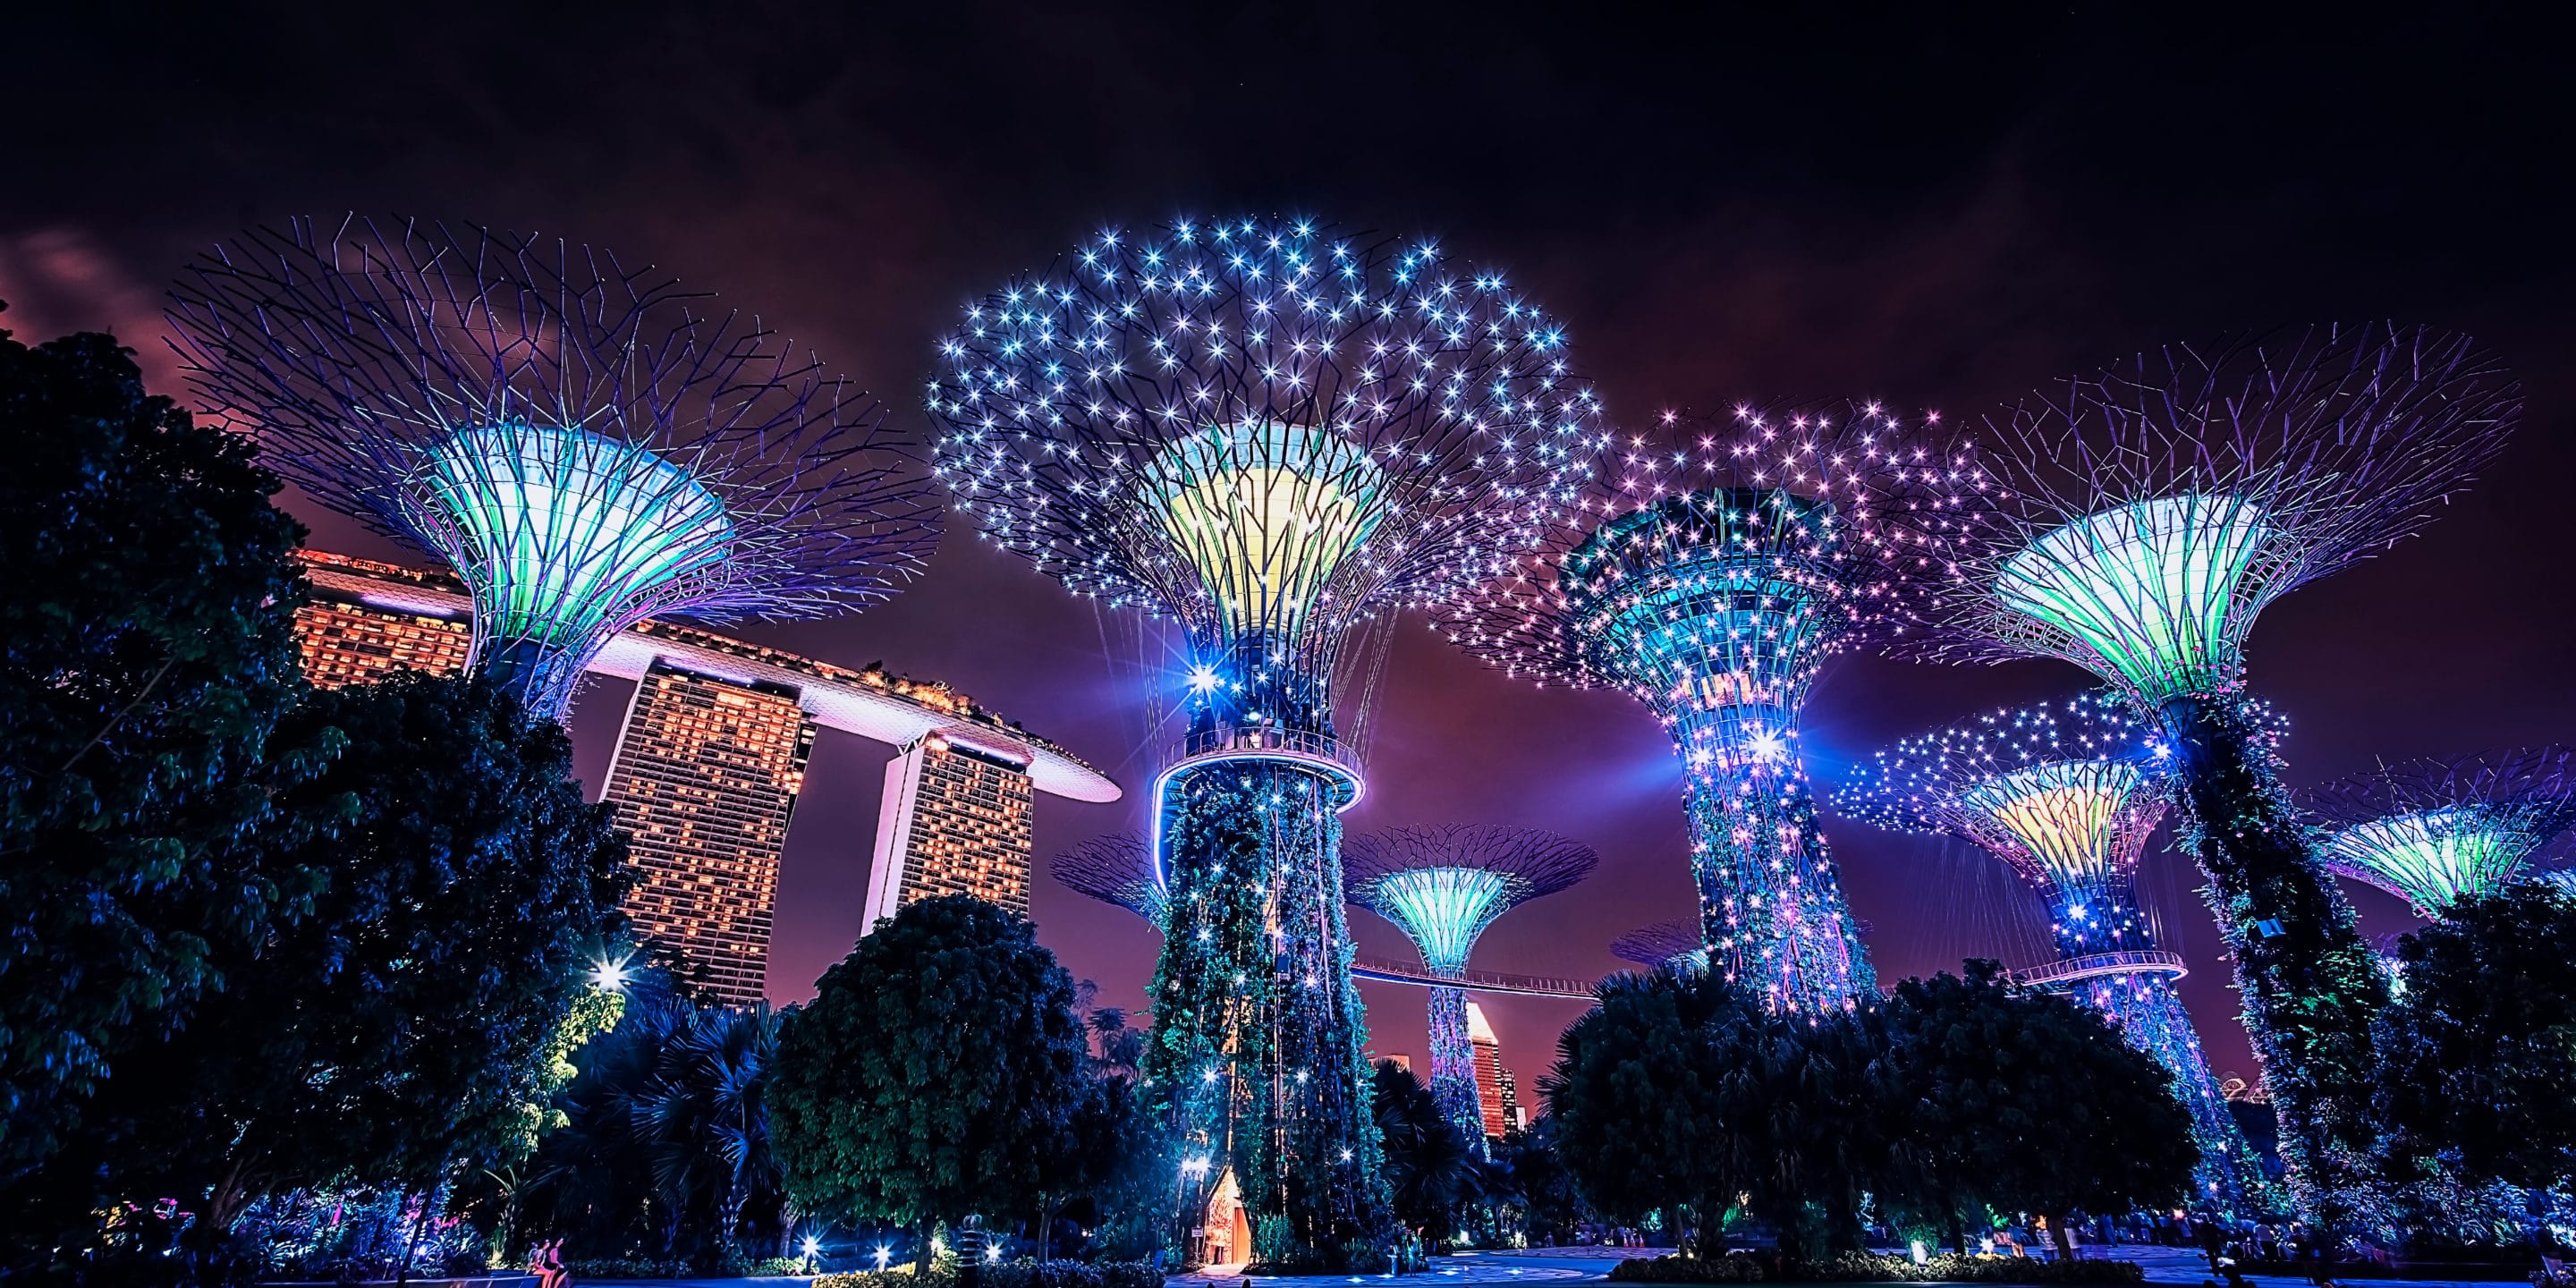 φωτάκια σε ένα δέντρο στη Σιγκαπούρη